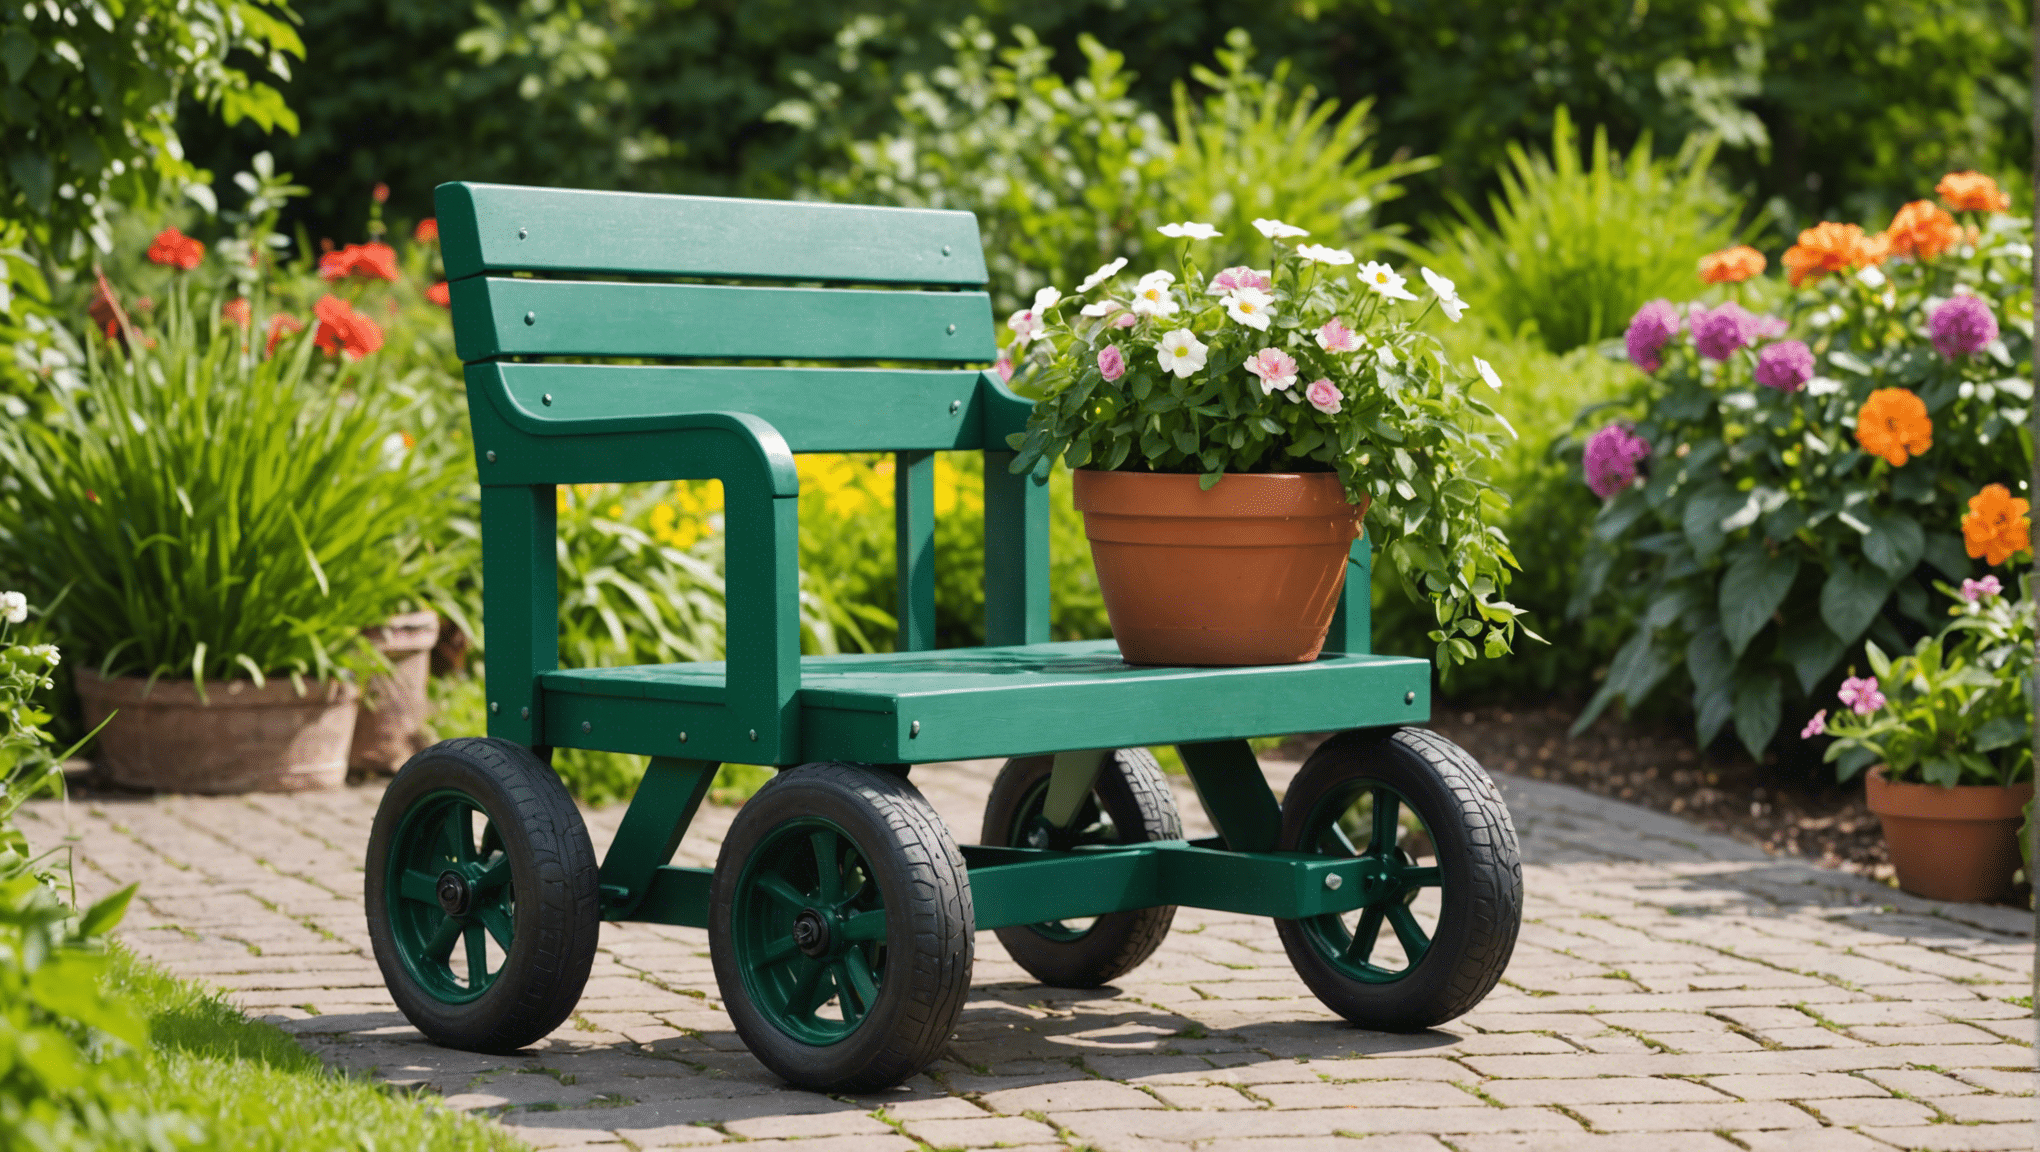 objavte výhody investície do záhradnej sedačky s kolieskami a premeňte svoj záhradný zážitok. zistite, ako môže tento všestranný nástroj zvýšiť vaše pohodlie a produktivitu v záhrade.